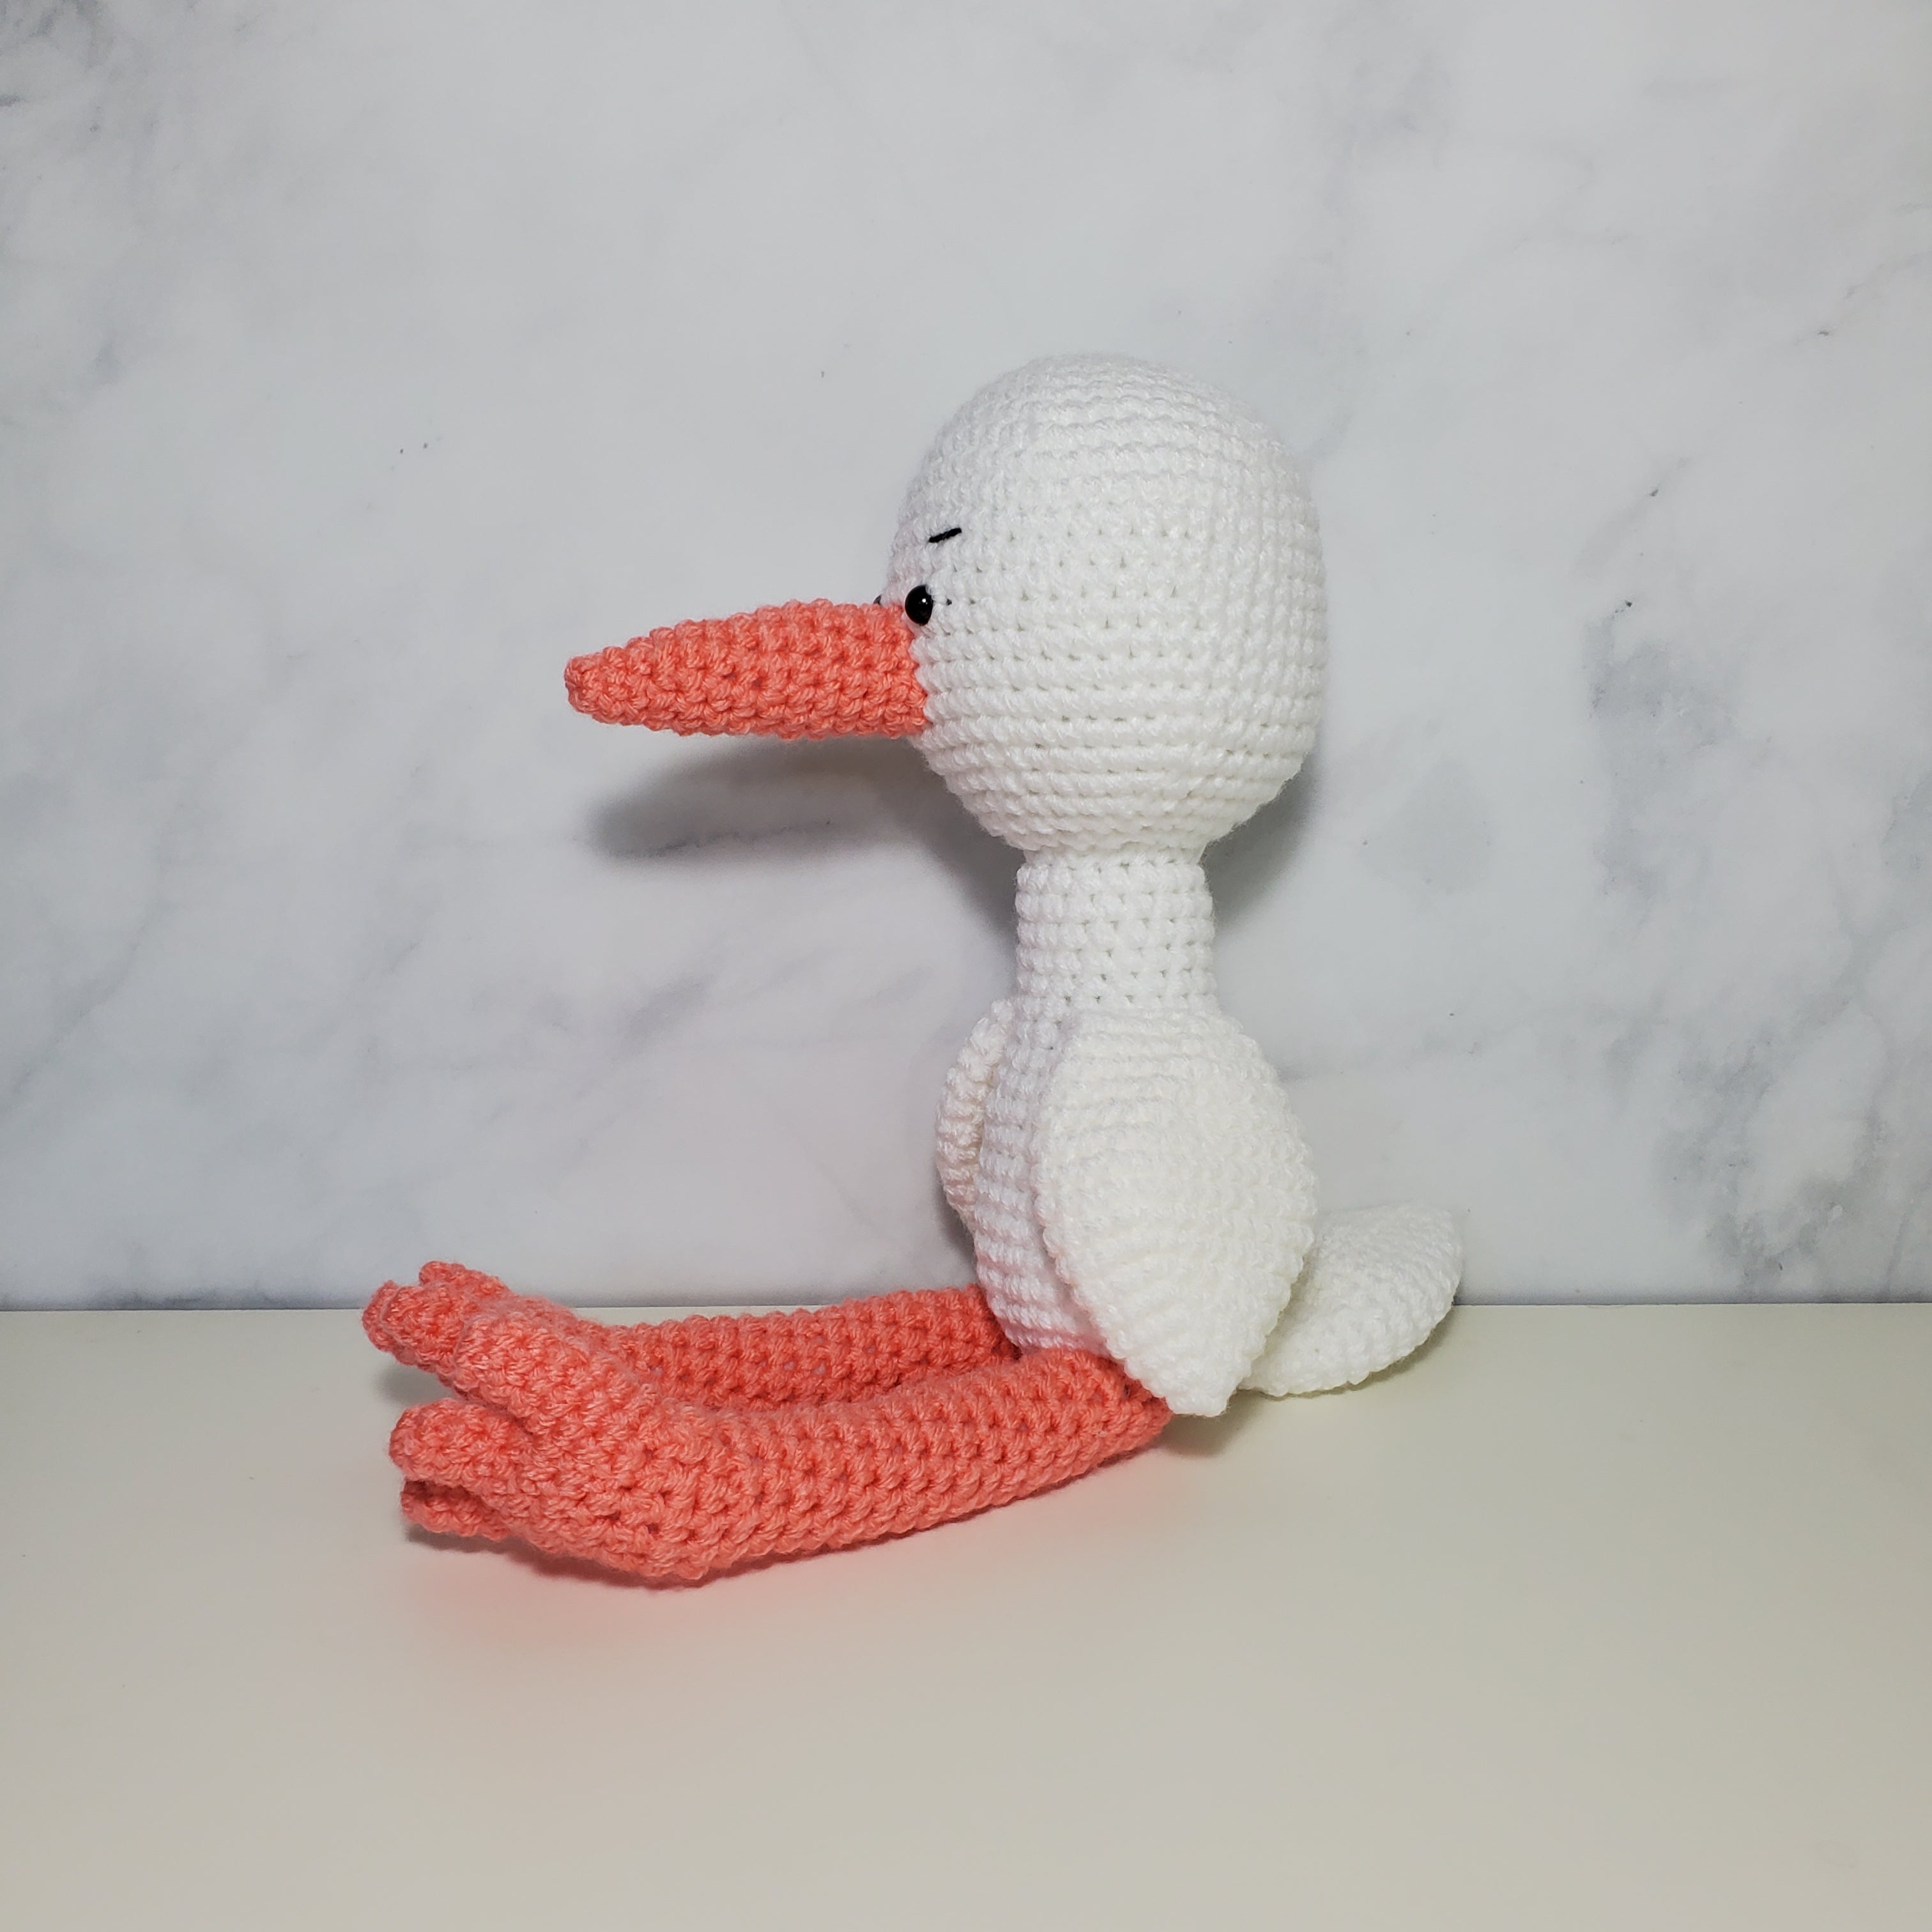 White Stork Plush Toy